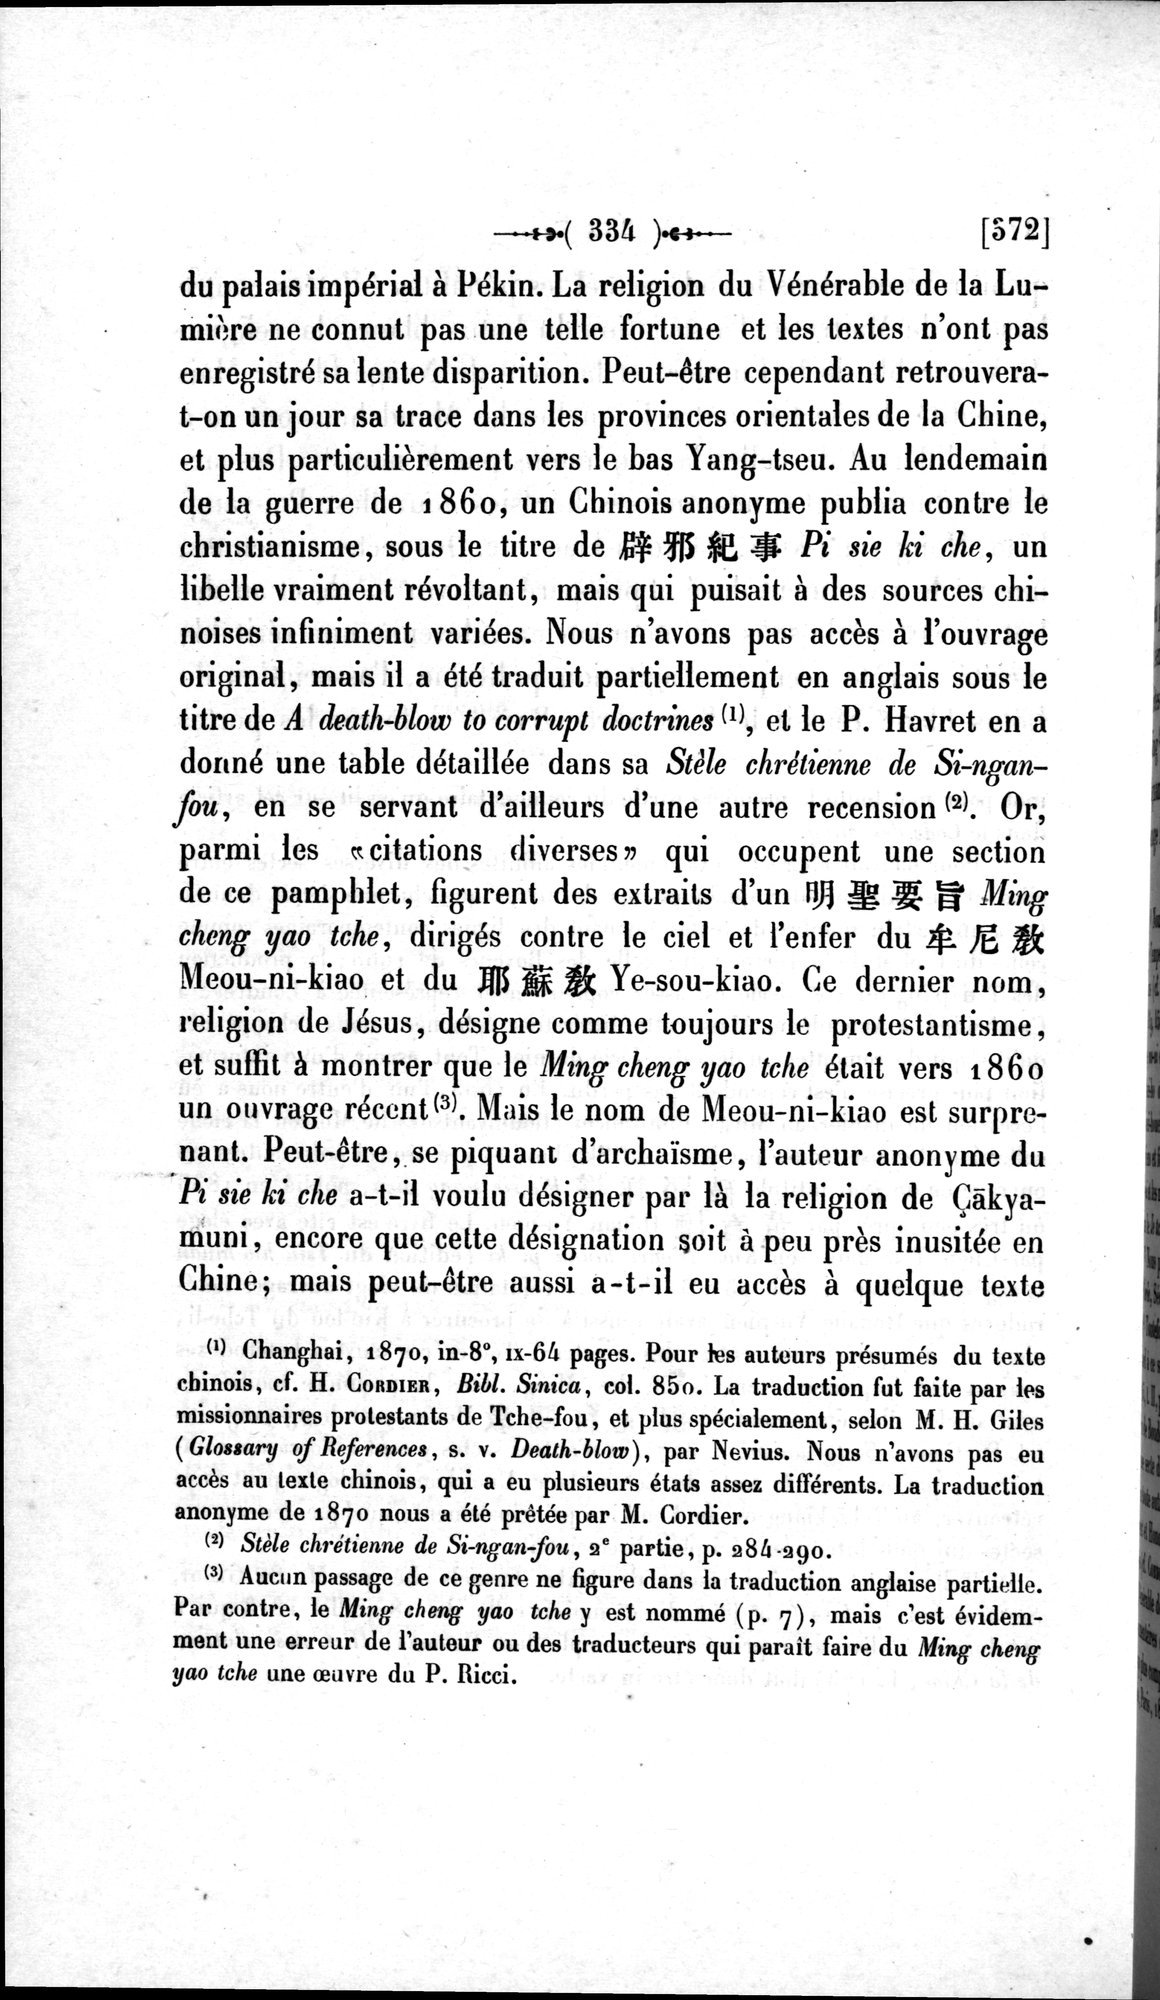 Un traité manichéen retrouvé en Chine : vol.1 / Page 344 (Grayscale High Resolution Image)